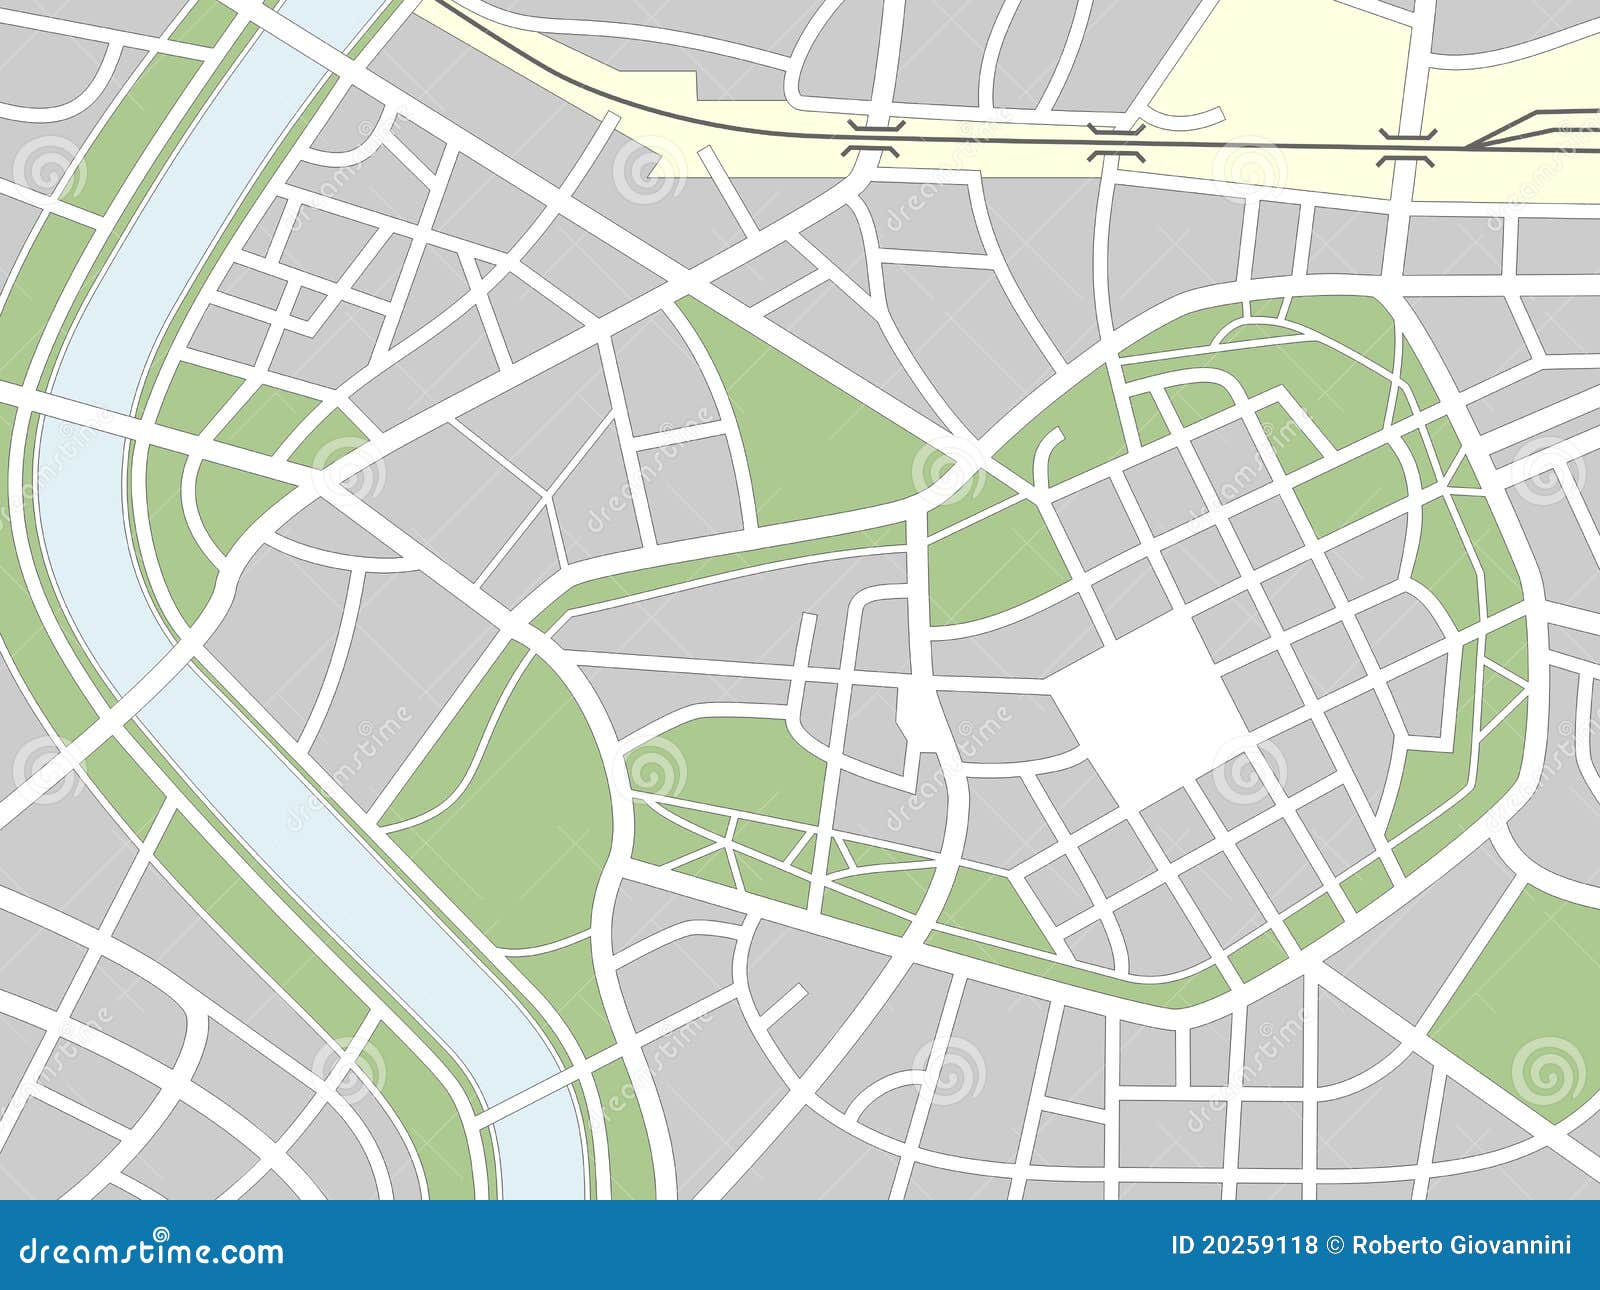 Nameless City Map Stock Illustrations – 23 Nameless City Map Stock Throughout Blank City Map Template